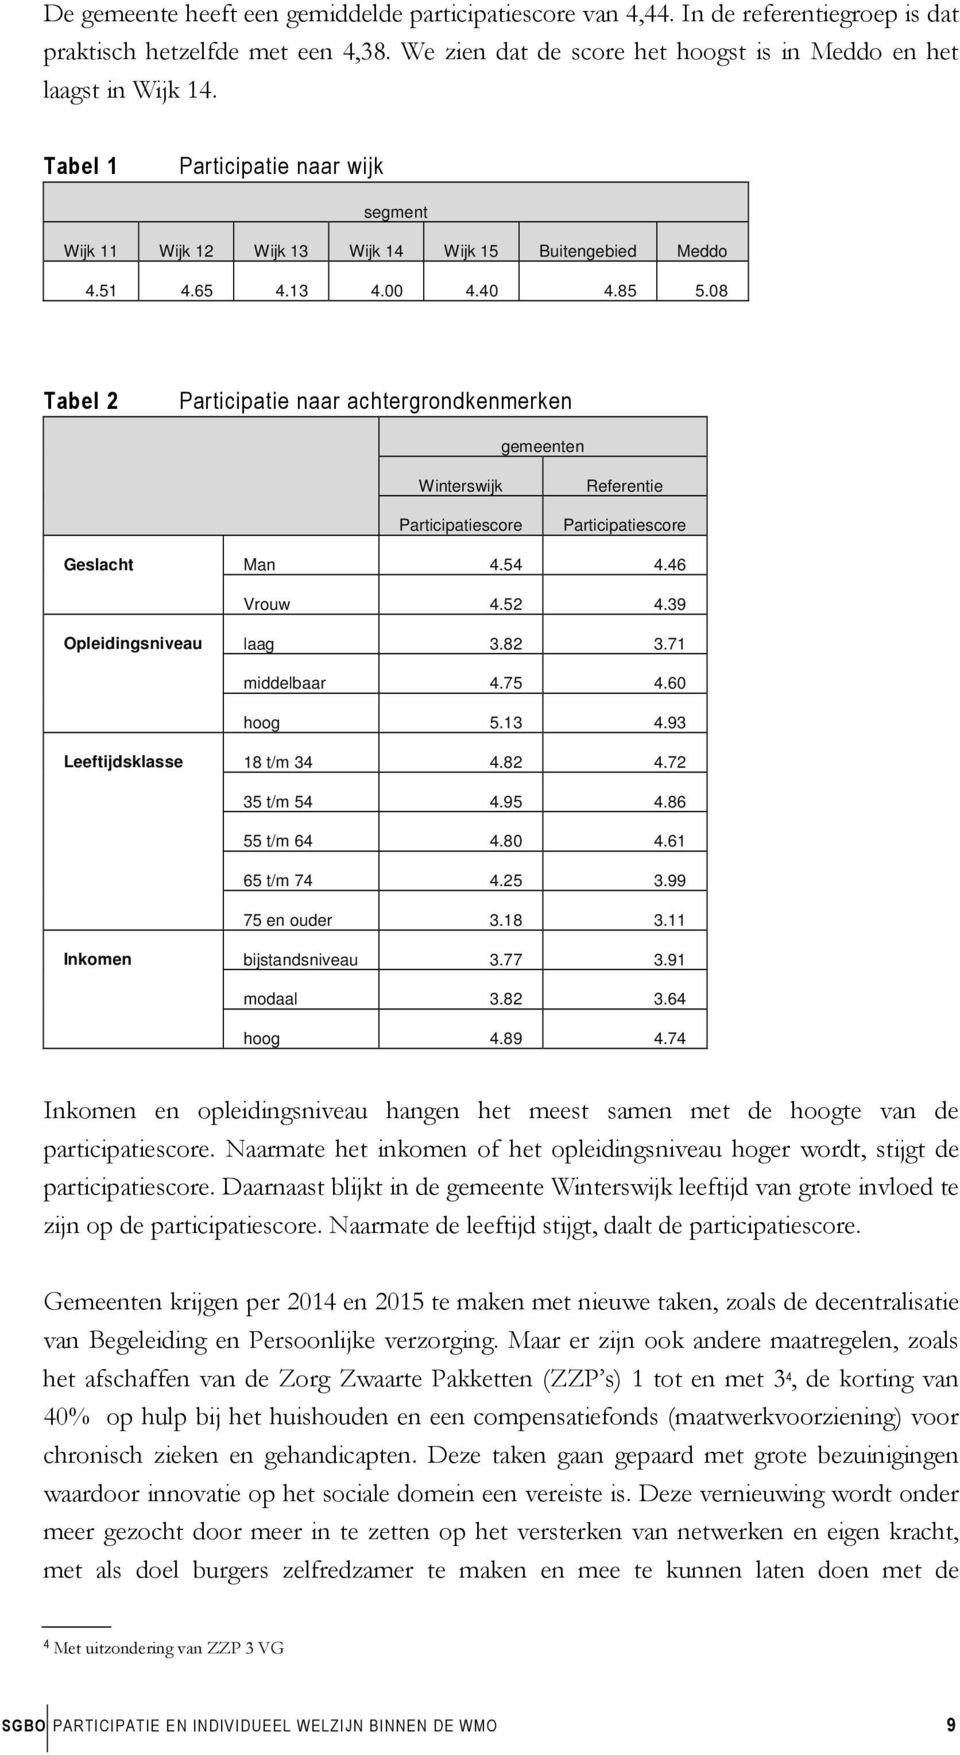 08 Tabel 2 Participatie naar achtergrondkenmerken gemeenten Winterswijk Participatiescore Referentie Participatiescore Geslacht Man 4.54 4.46 Vrouw 4.52 4.39 Opleidingsniveau laag 3.82 3.